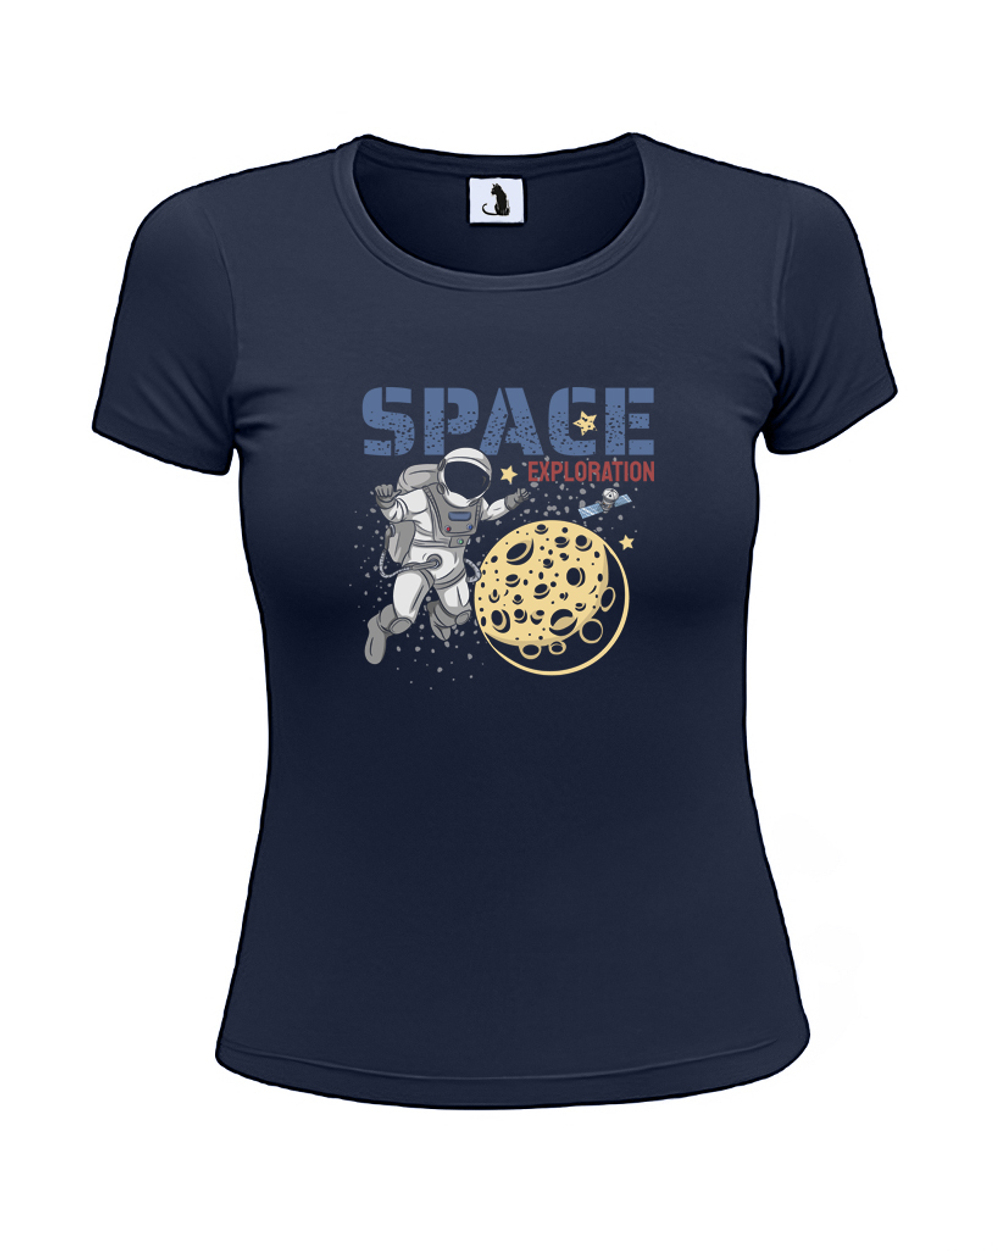 Футболка Space exploration женская приталенная темно-синяя